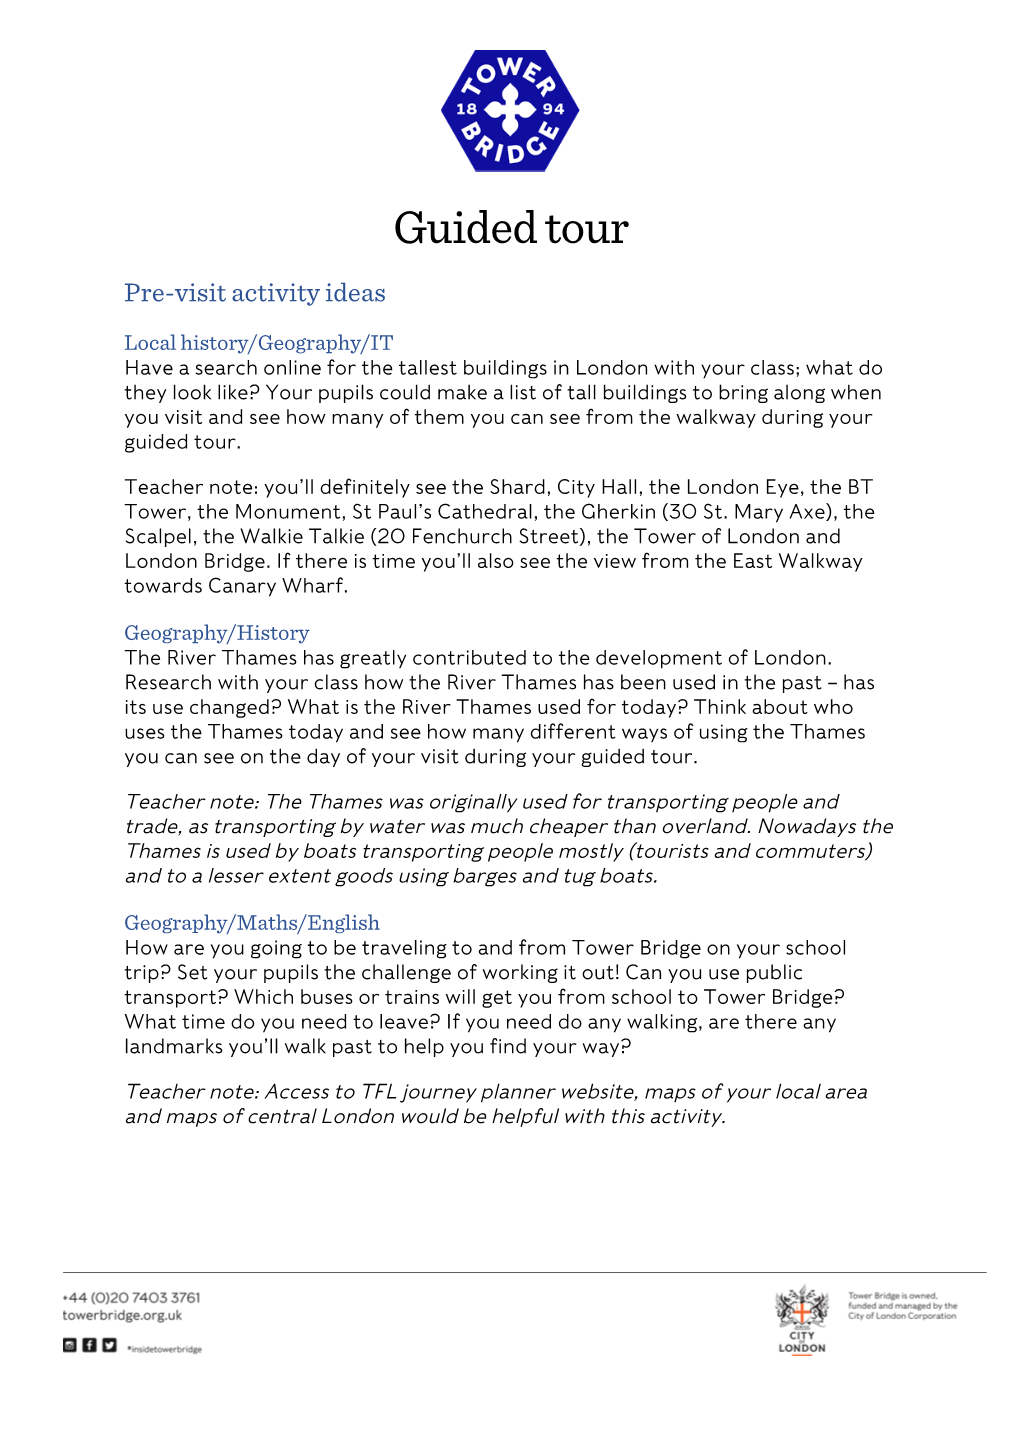 Guided Tour Pre-Visit Activity Ideas